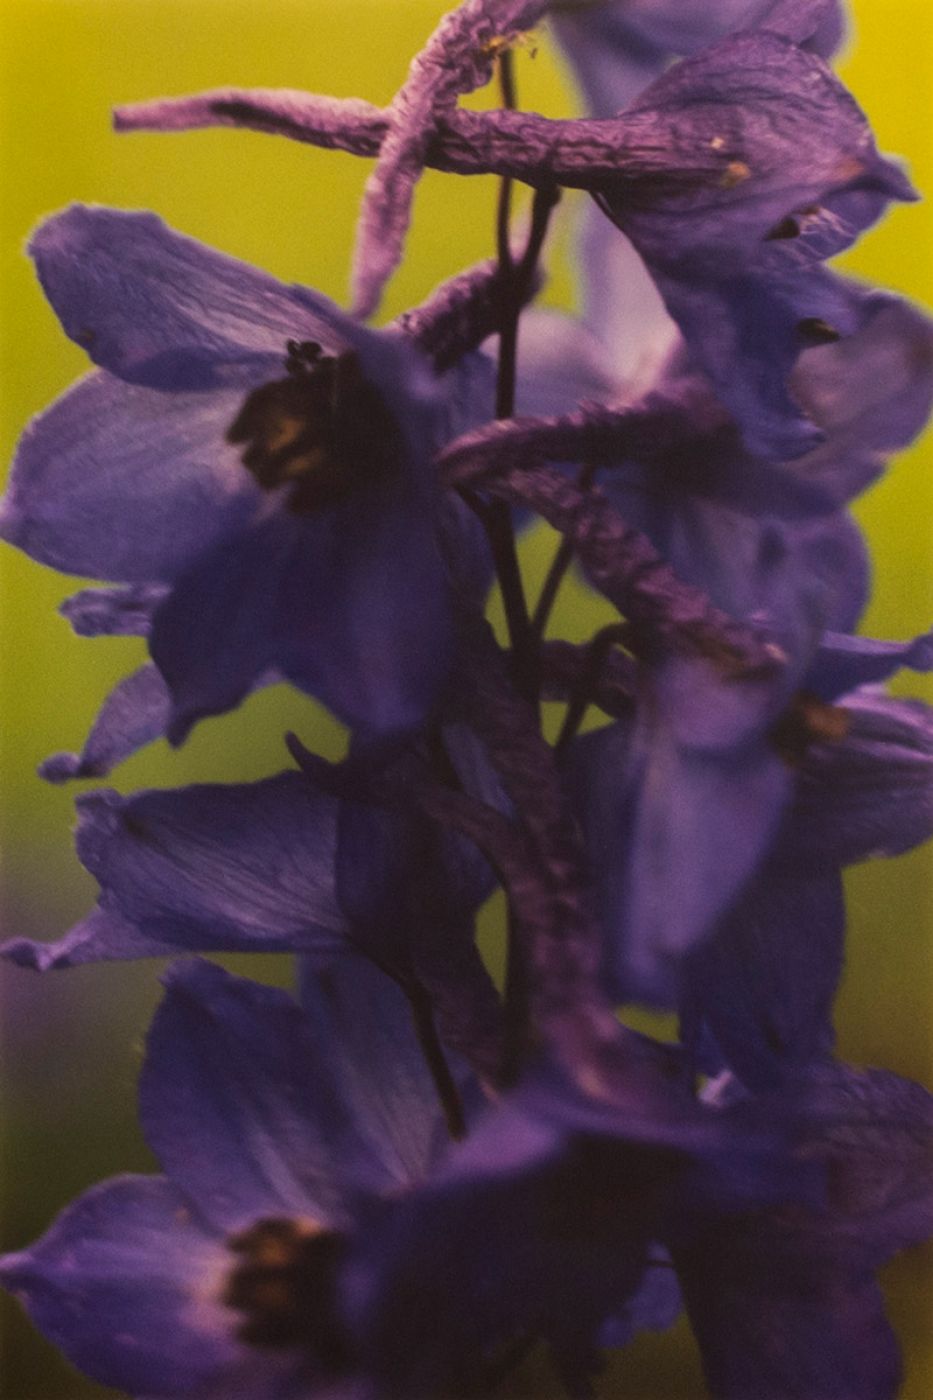 Thomas Struth, “Dunkler violetter rittersporn n.7”, 1992